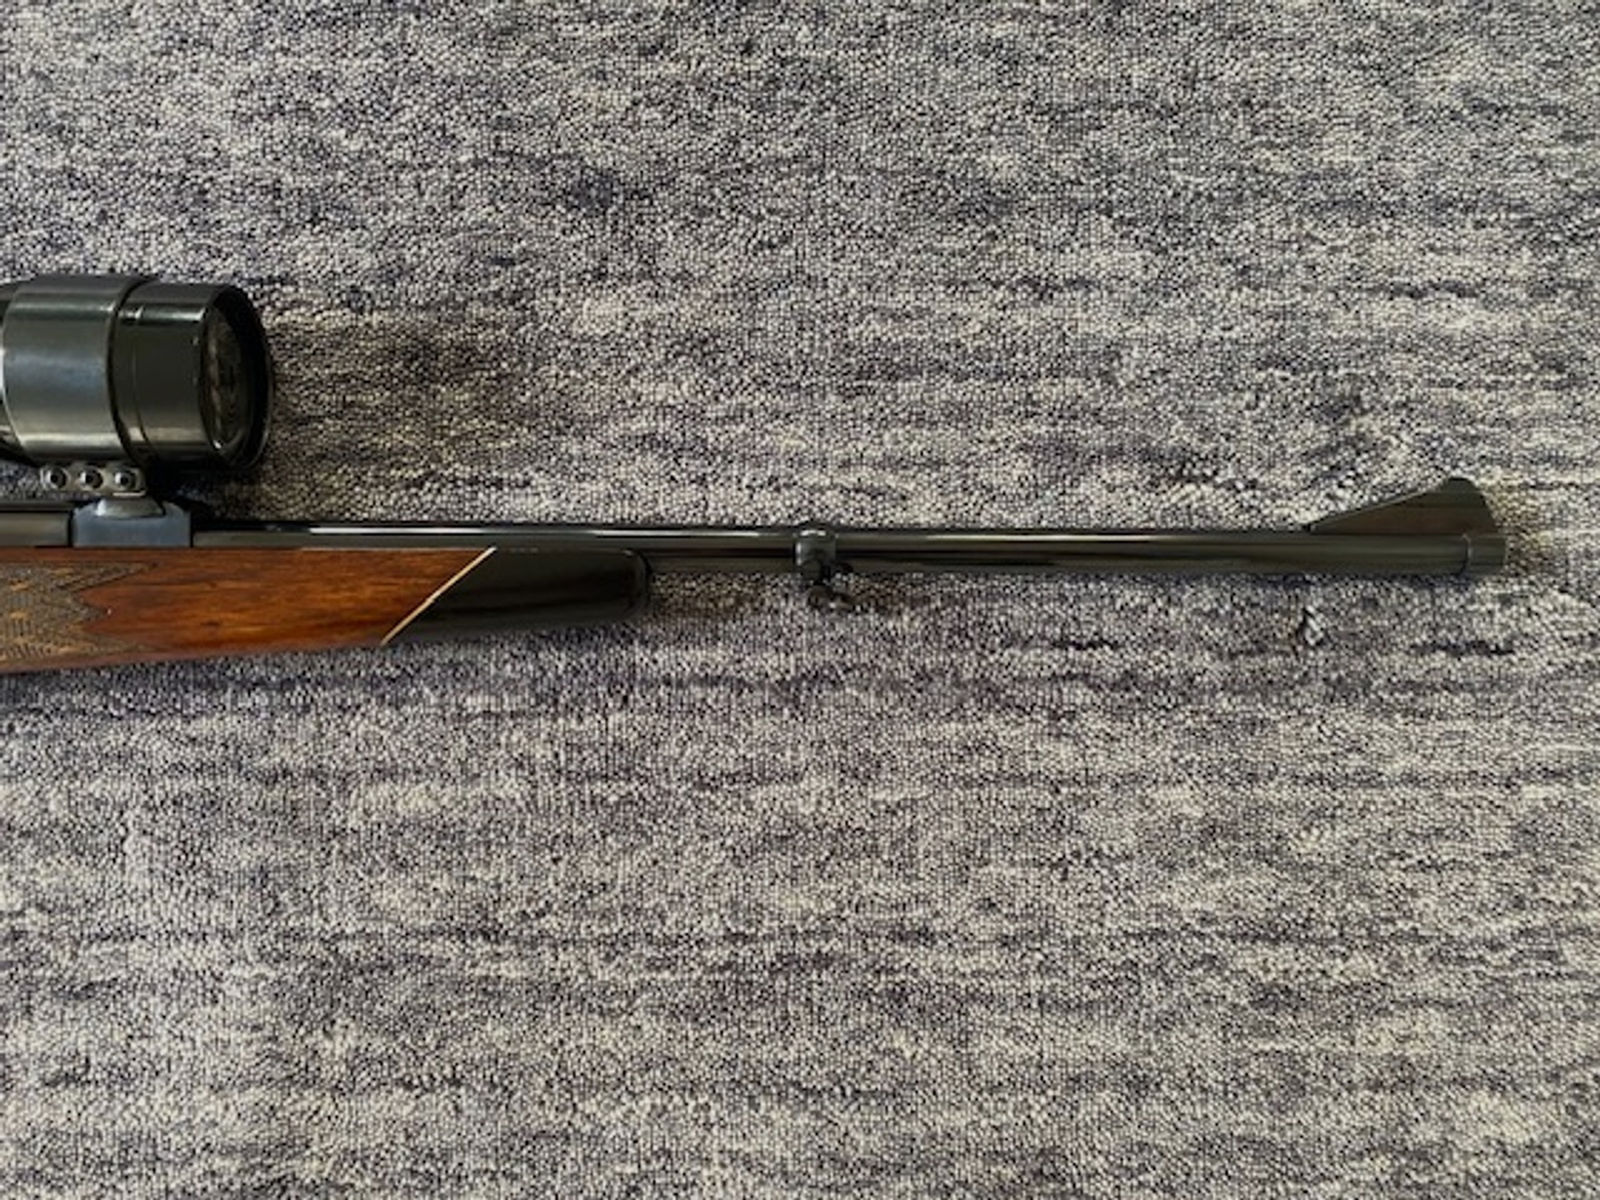 Mauser Mod. 66 - Kal. 30.06 Springfield